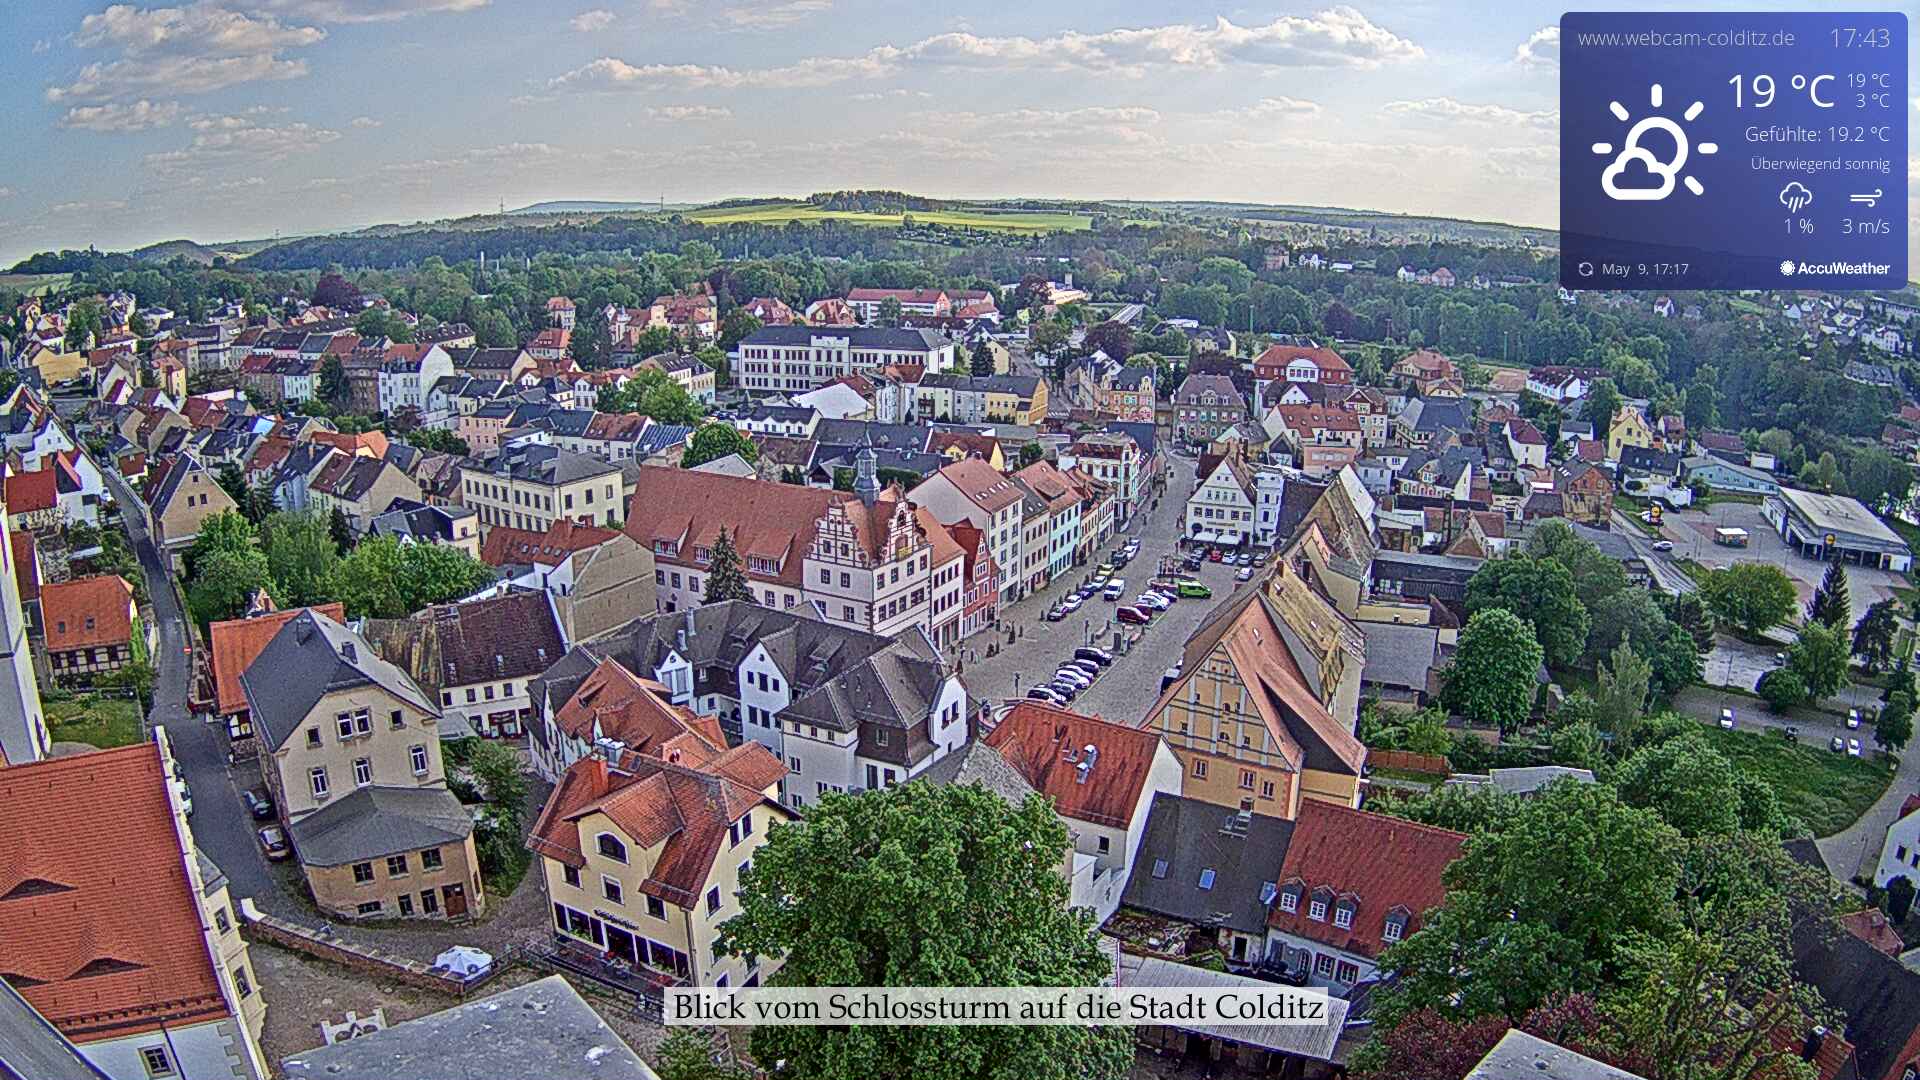 Webcam Colditz. Blick auf die Stadt Colditz. 
Wenn hier kein Bild zu sehen ist bitte hier klicken.